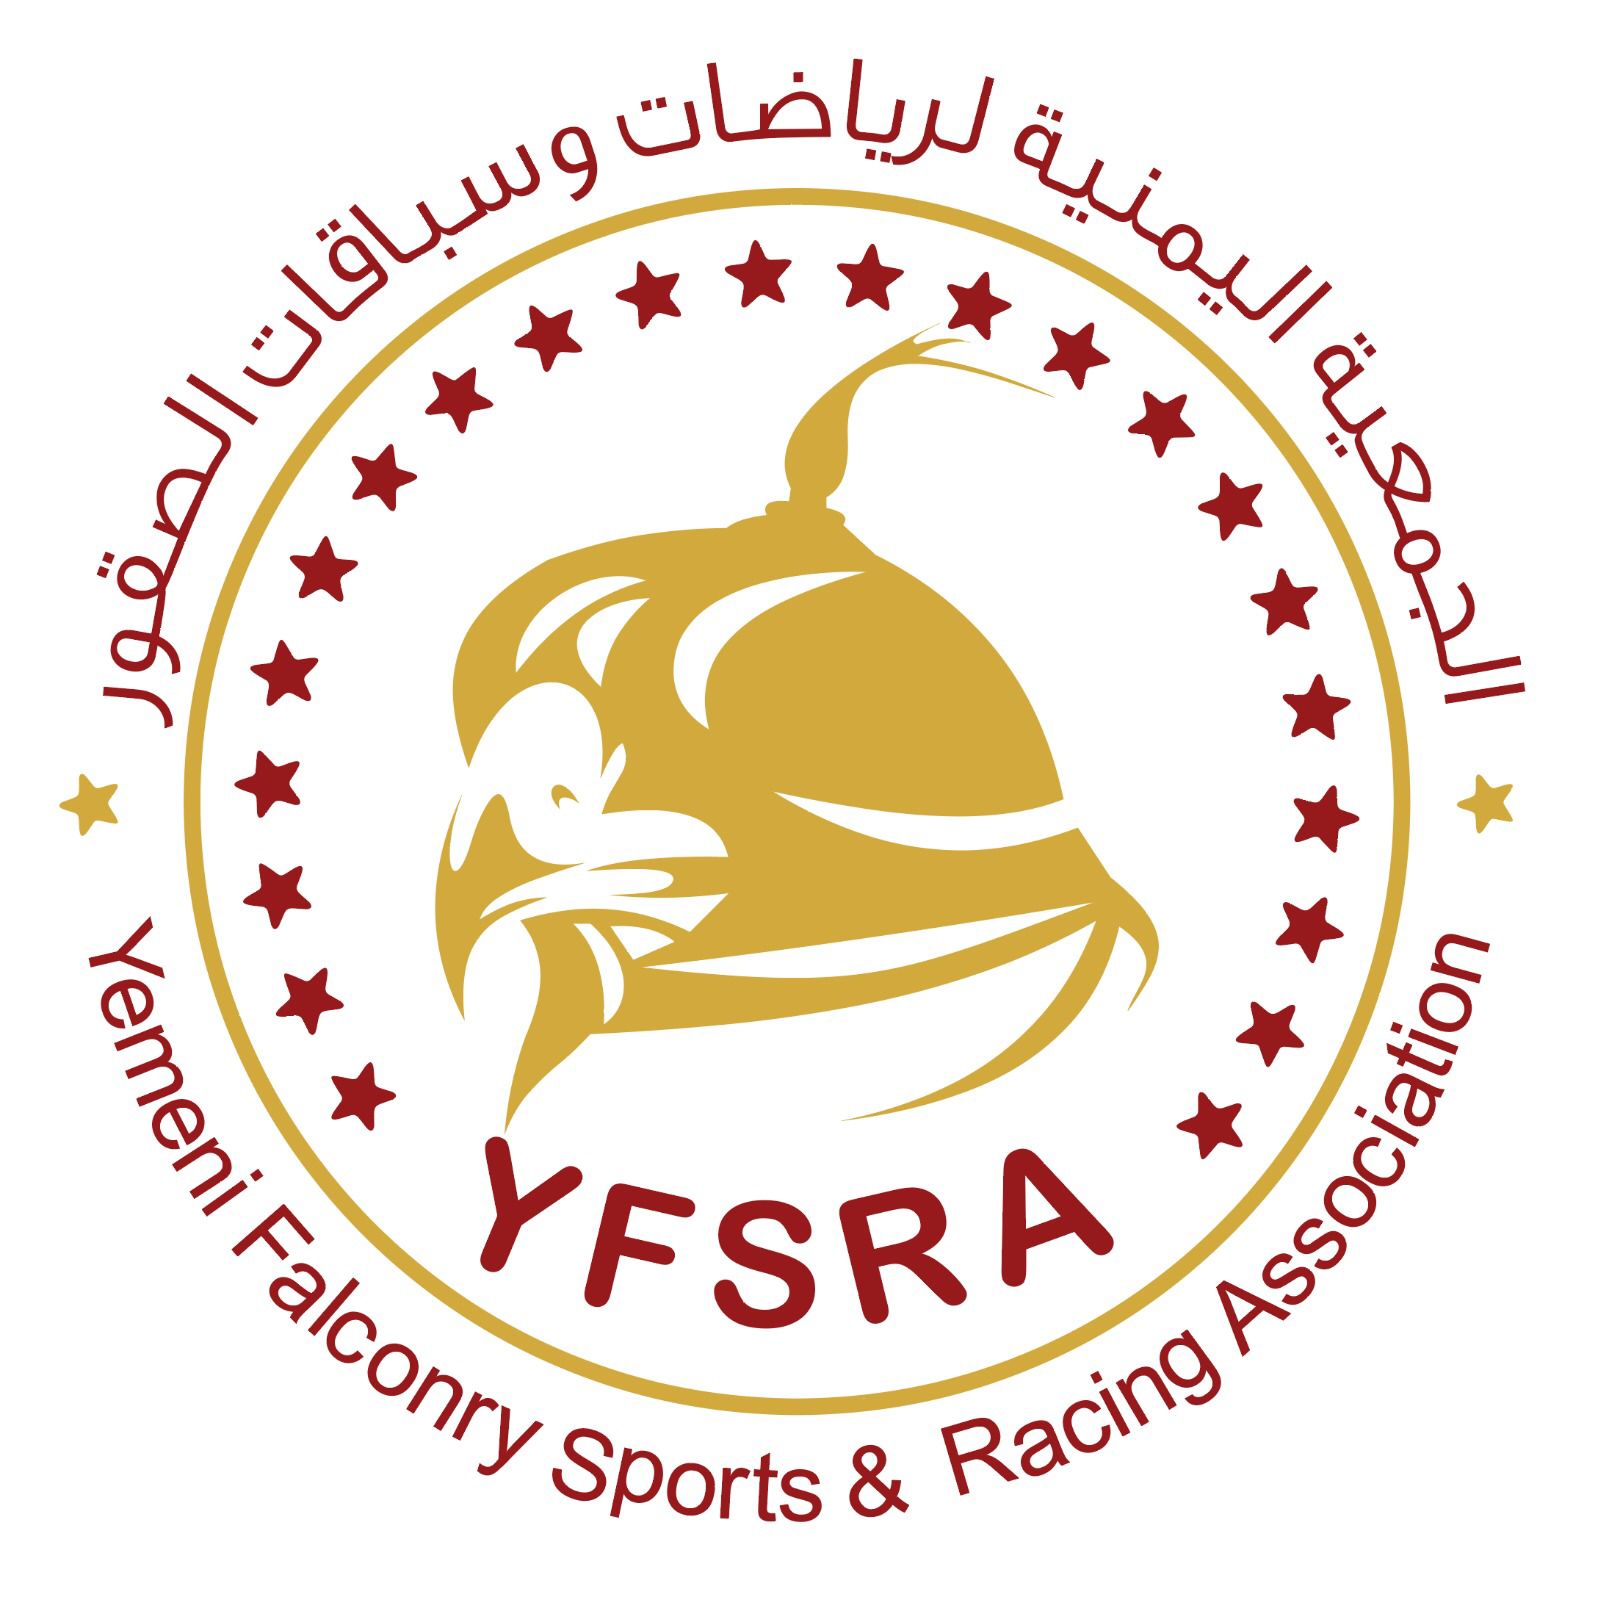 الجمعية اليمنية لرياضات وسباقات الصقور تعلن انضمامها رسمياً للاتحاد الدولي للرياضة